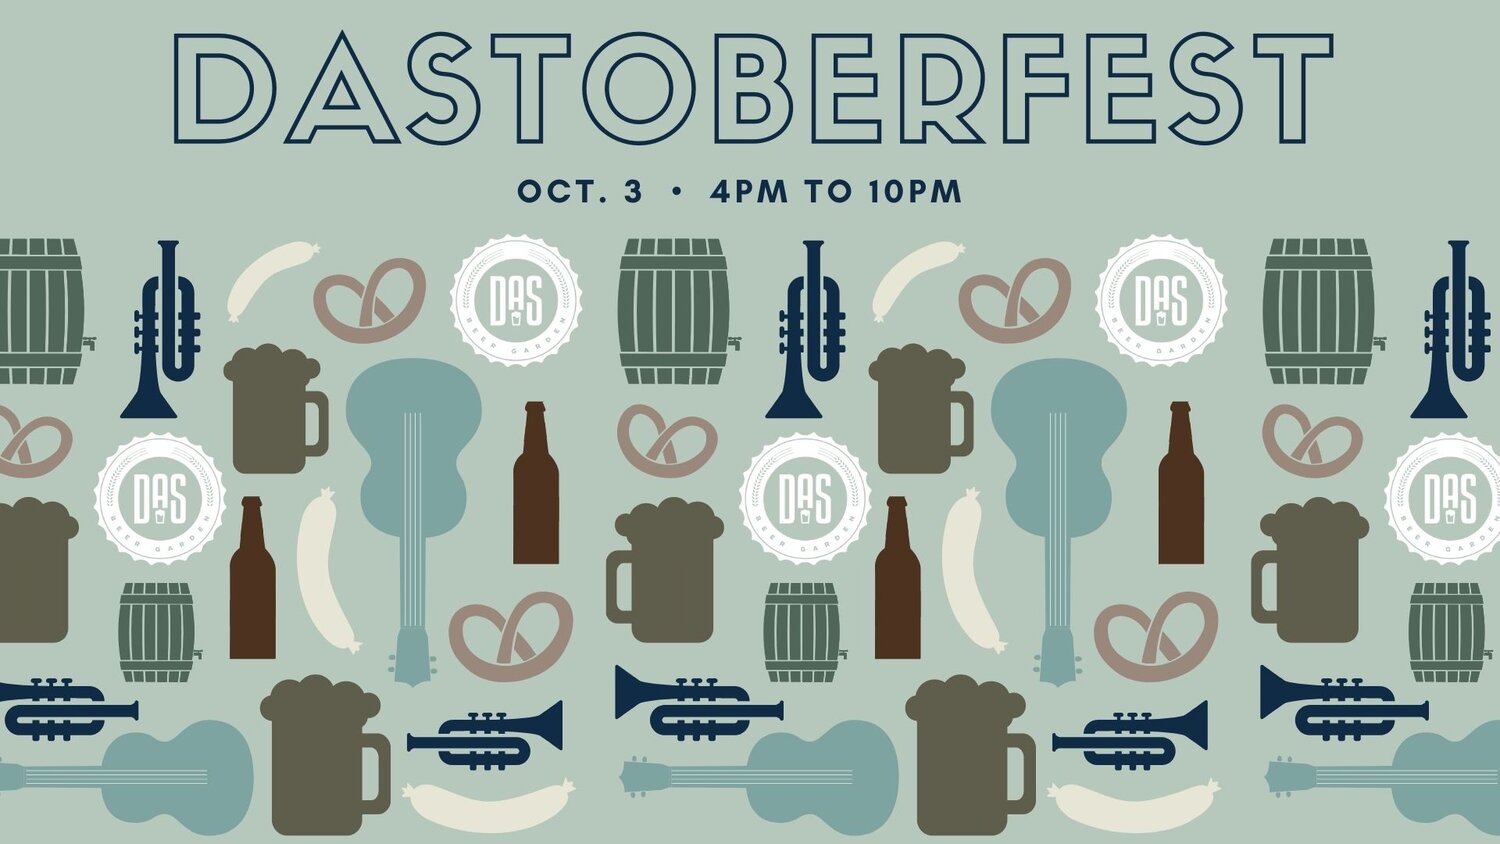 Dastoberfest - Celebrate Oktoberfest At Das Beer Garden In Jupiter Das Craft Beer